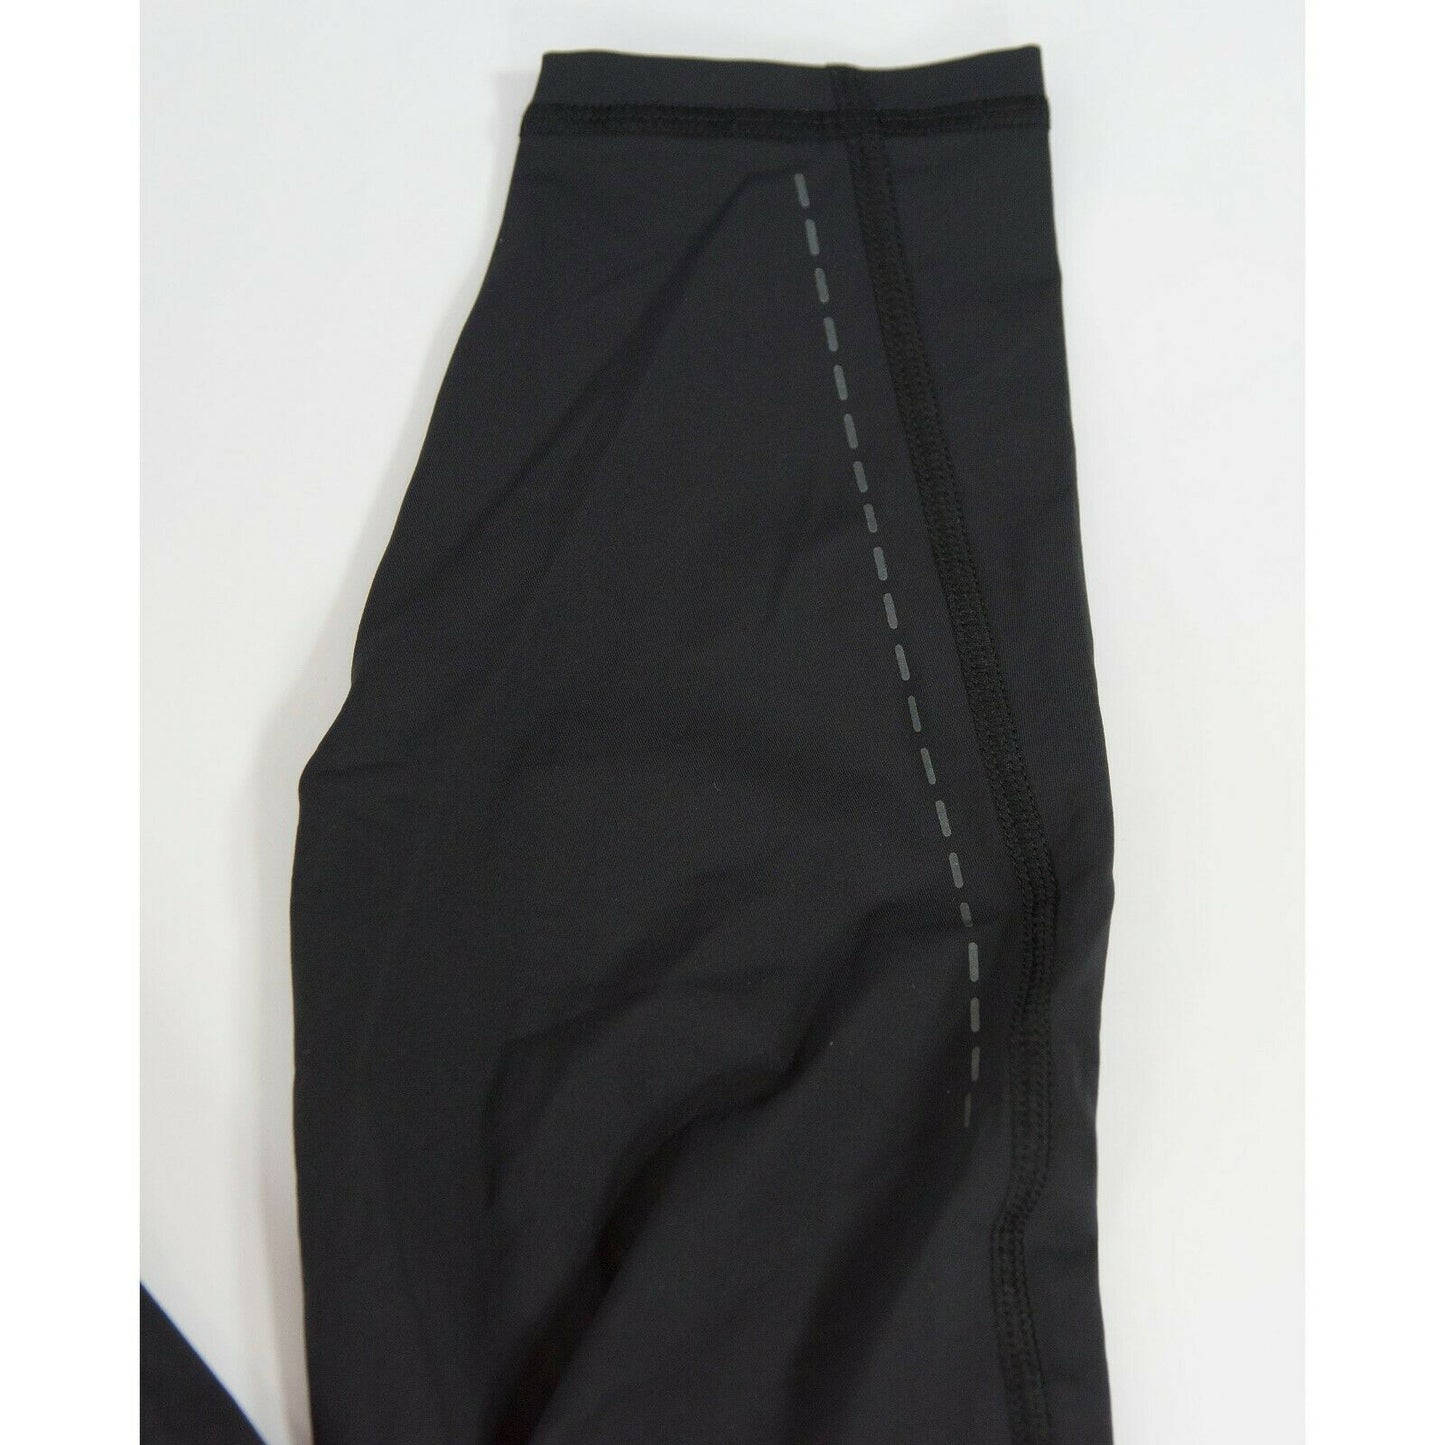 Lululemon Black tight leggings NWOT Size M C13